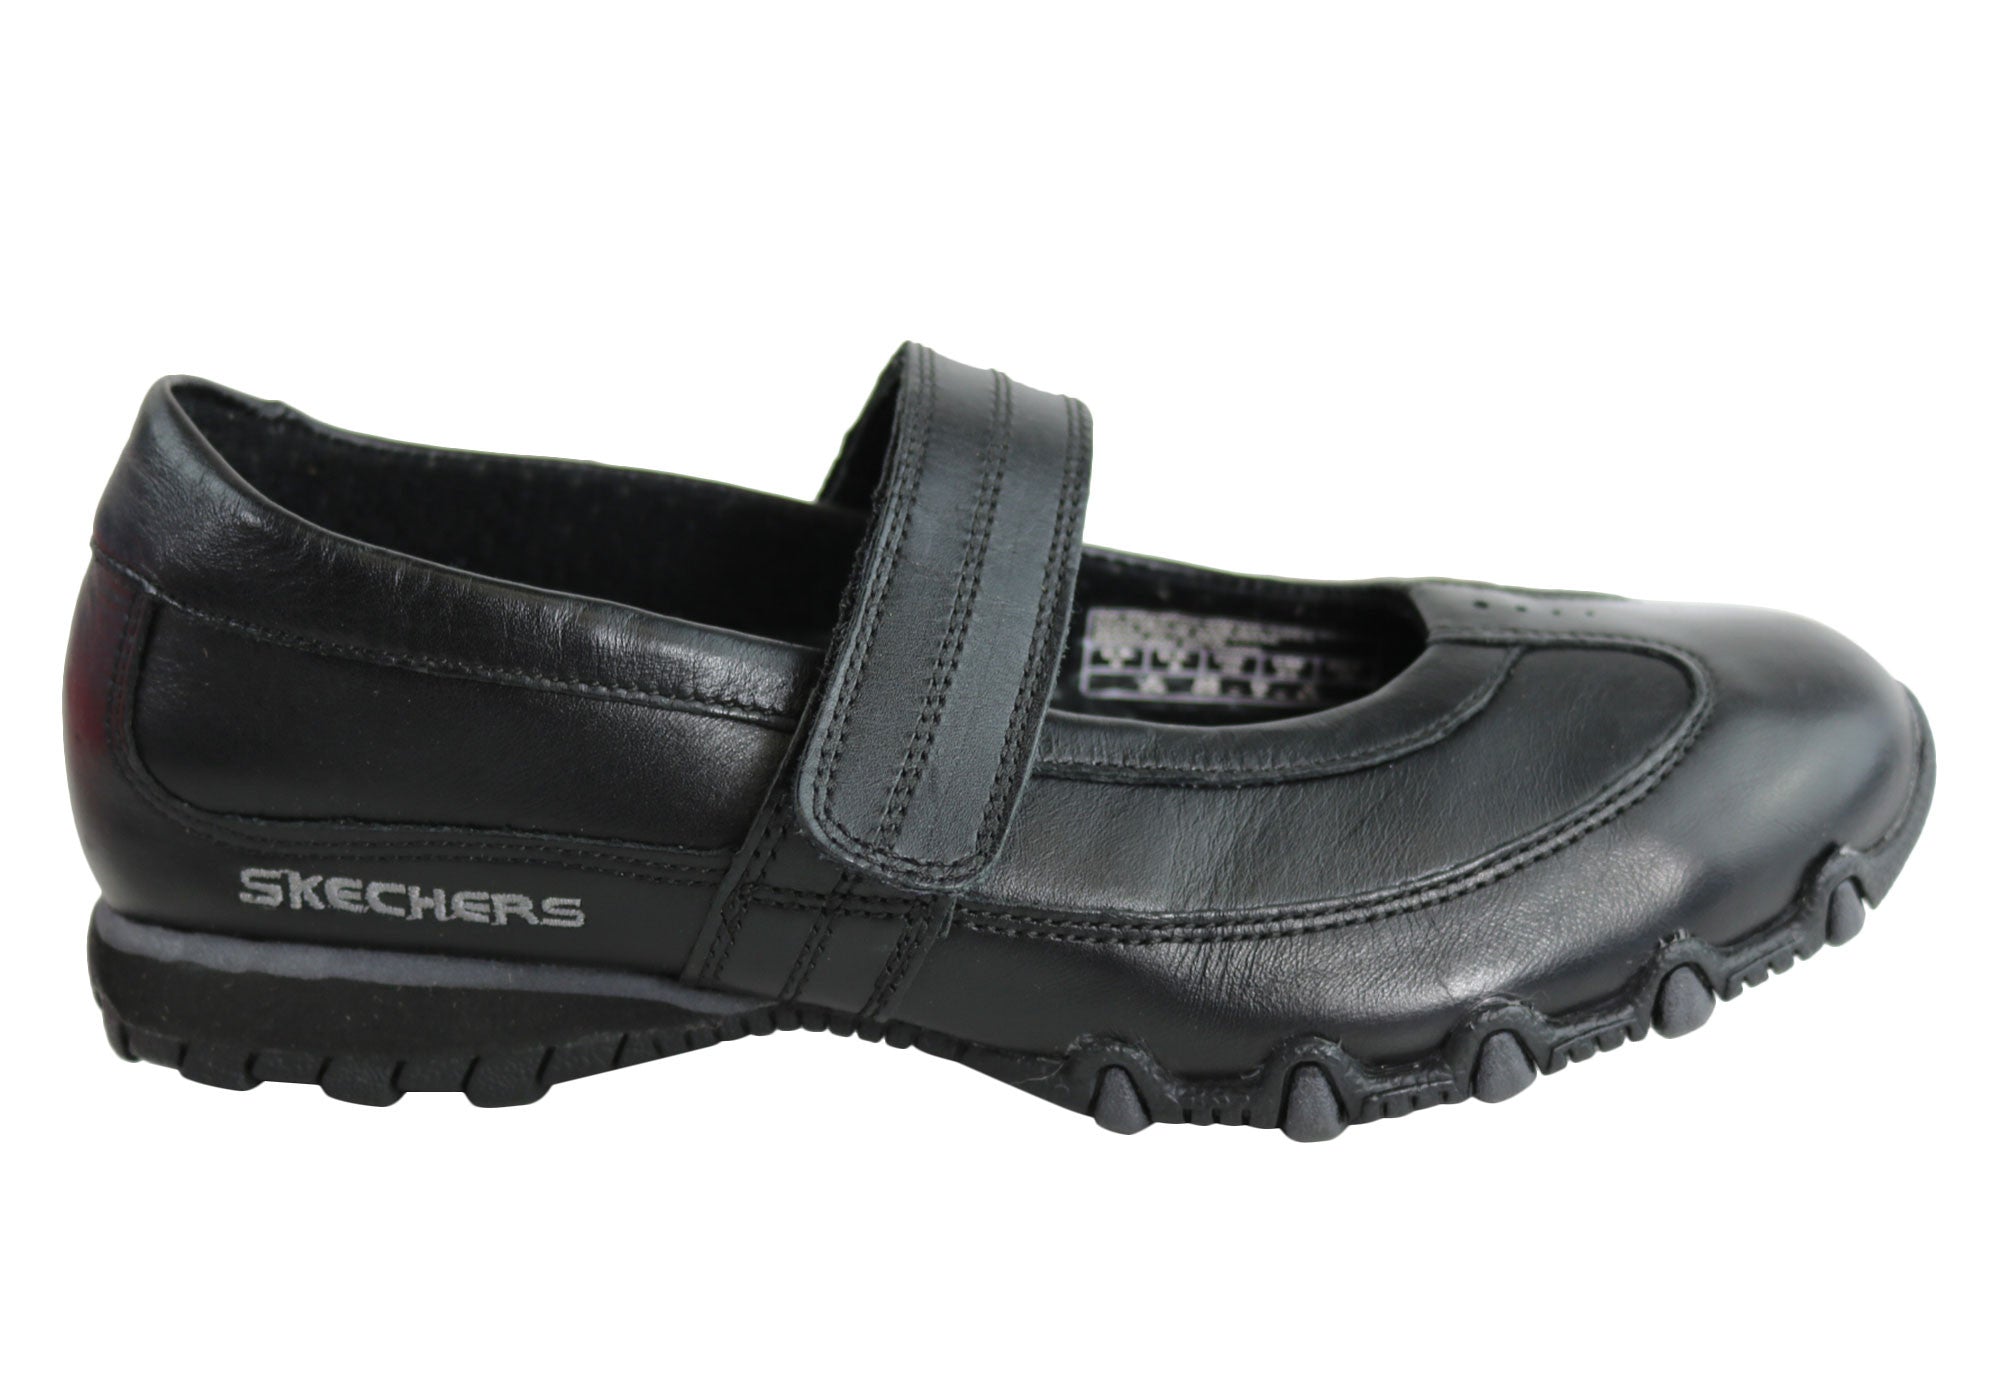 skechers go walk tm women's mary jane style shoe